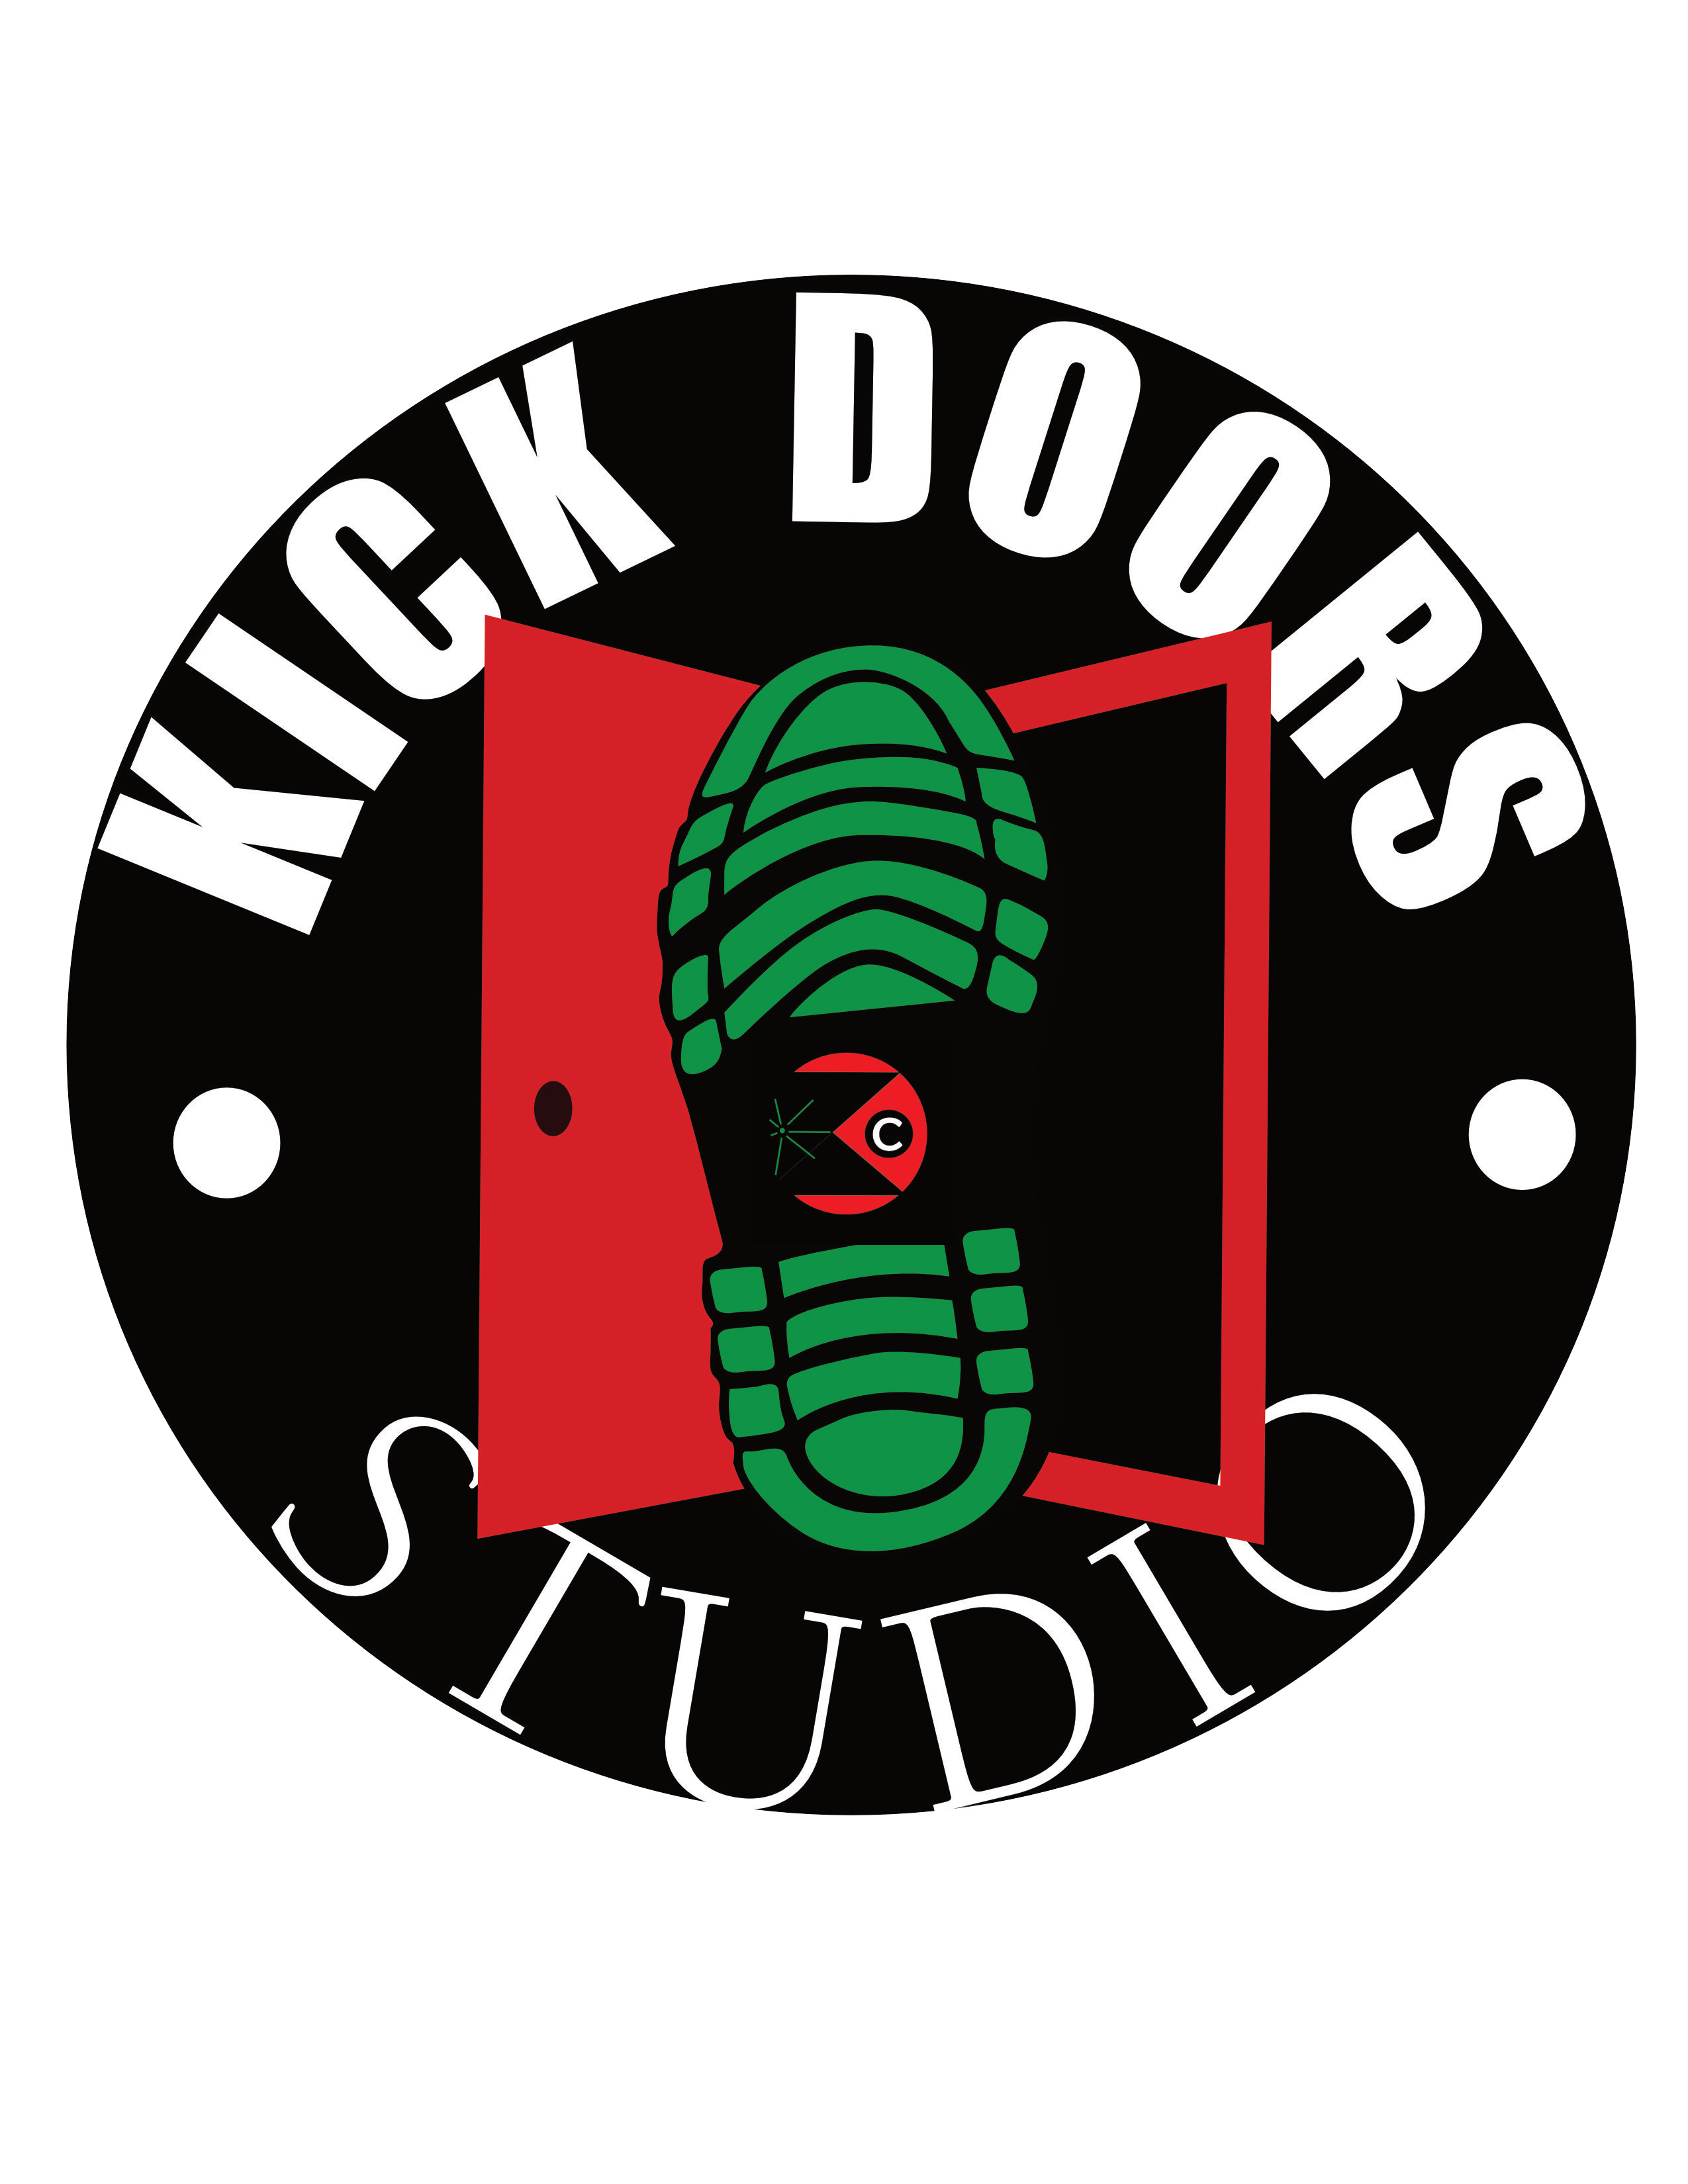 Kick Doors Studio, LLC